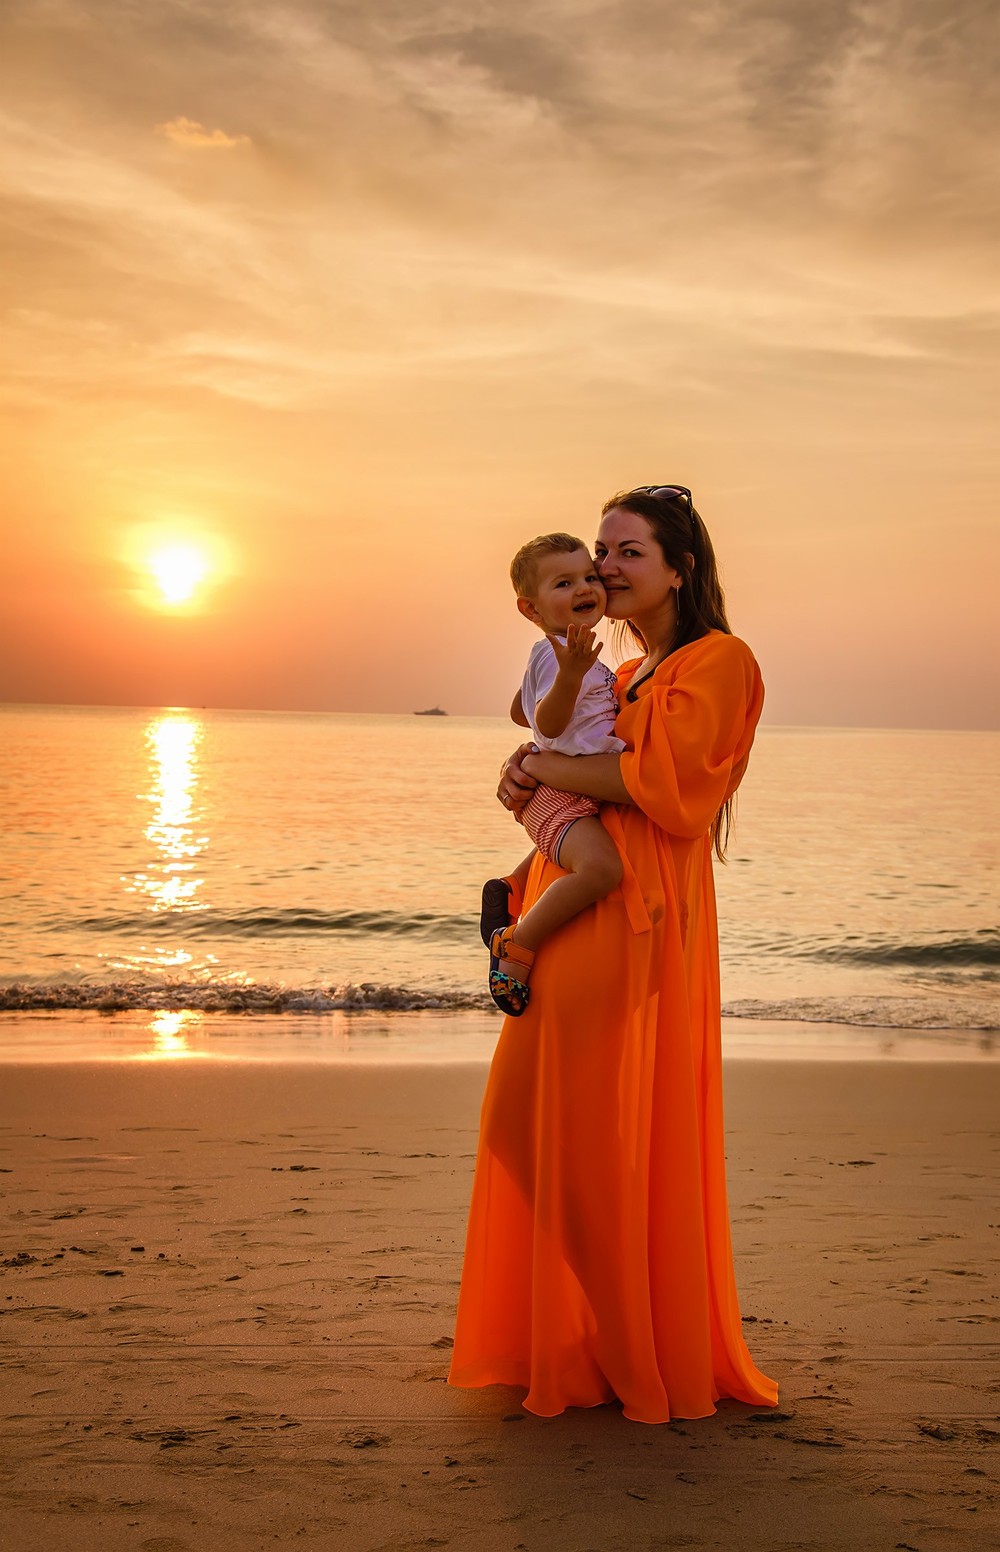 семейная детская фотосессия фотограф Пхукет Тайланд на пляже папа мама сын ребенок Phuket